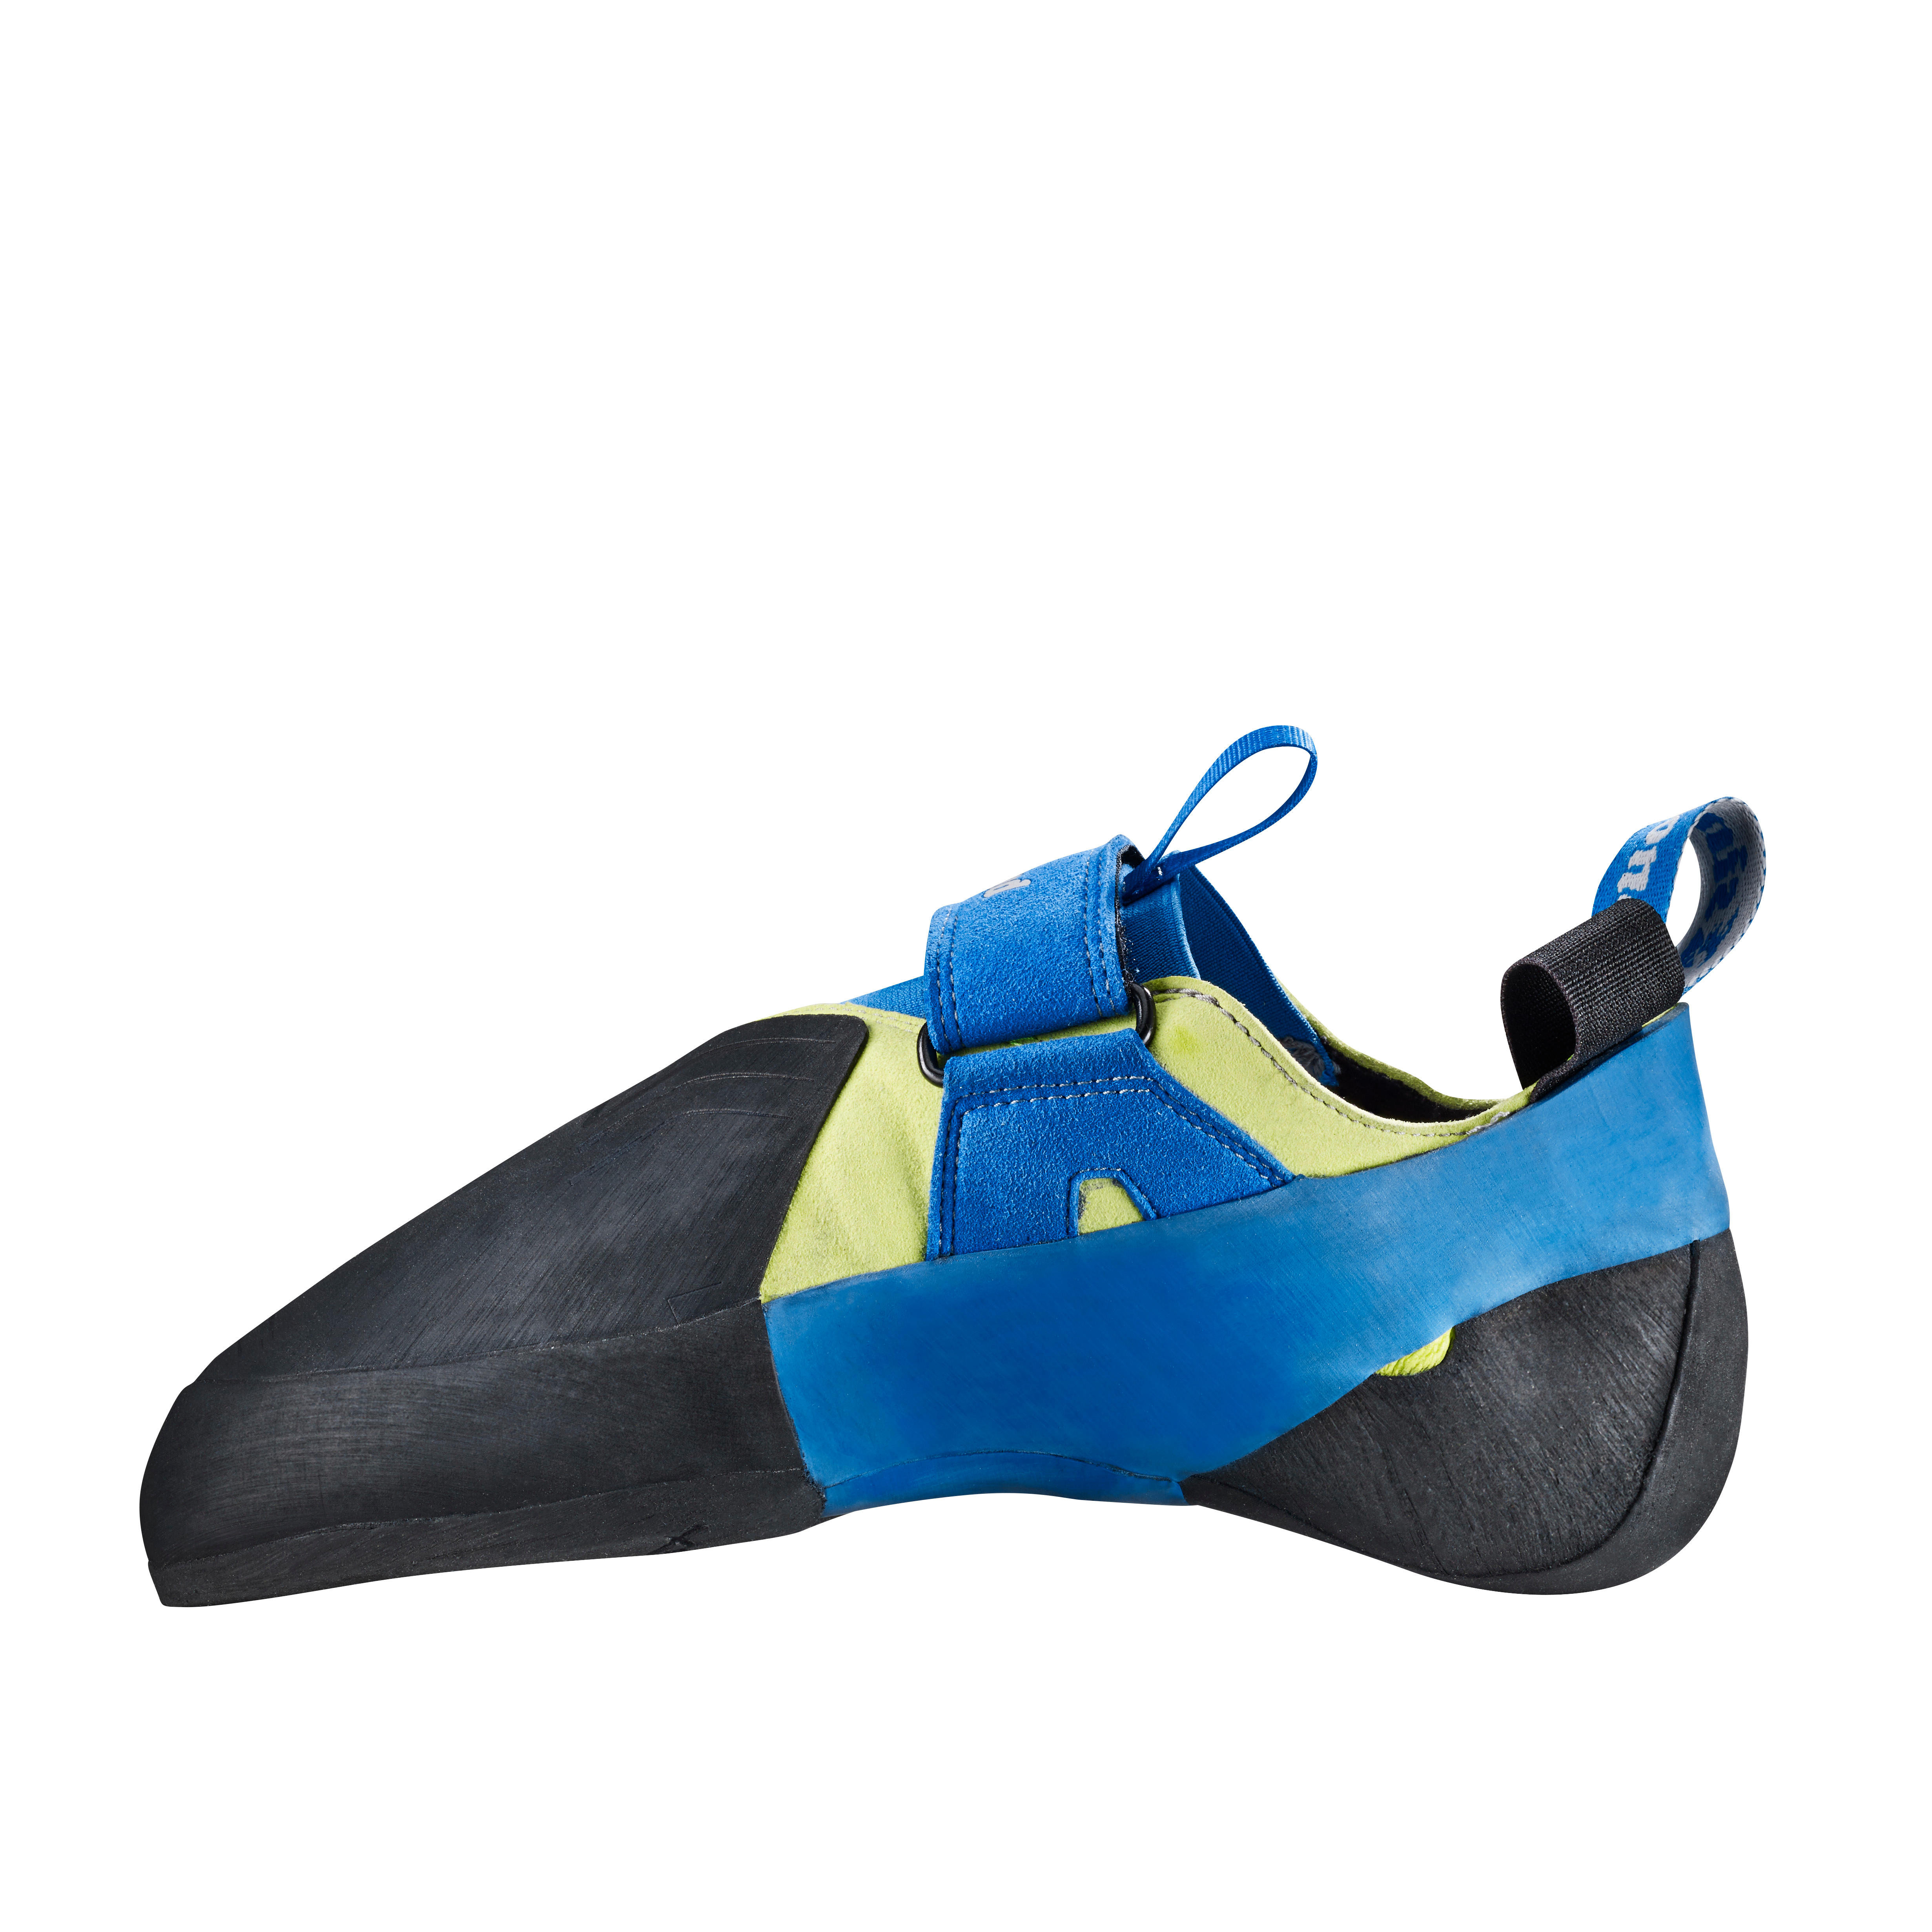 decathlon simond climbing shoes